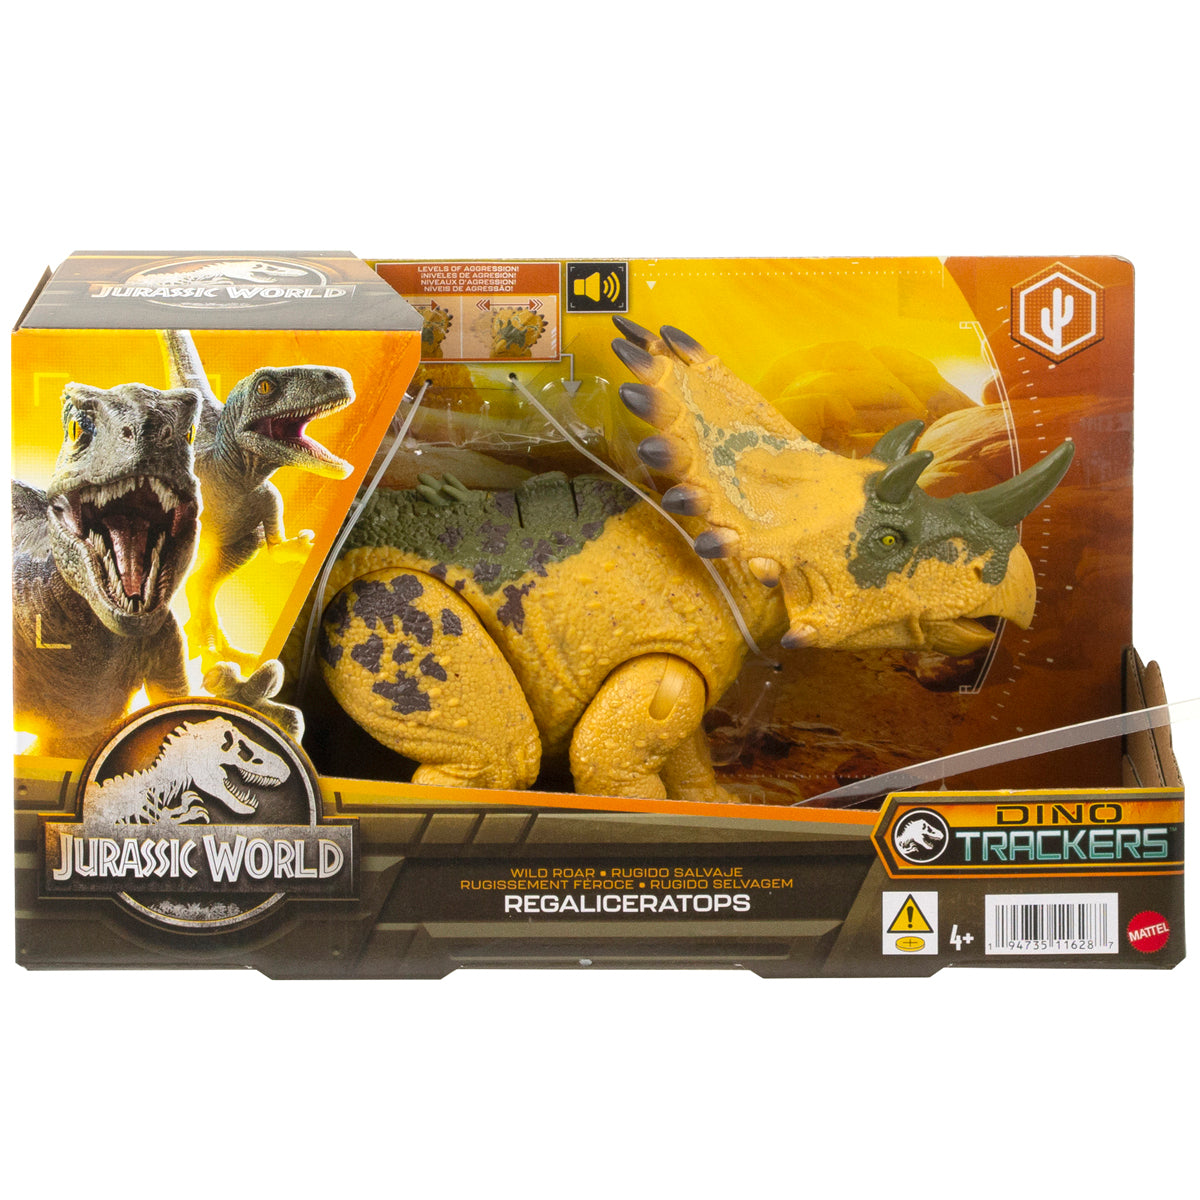 Jurassic World Wild Roar Regakiceratops Dinosaur